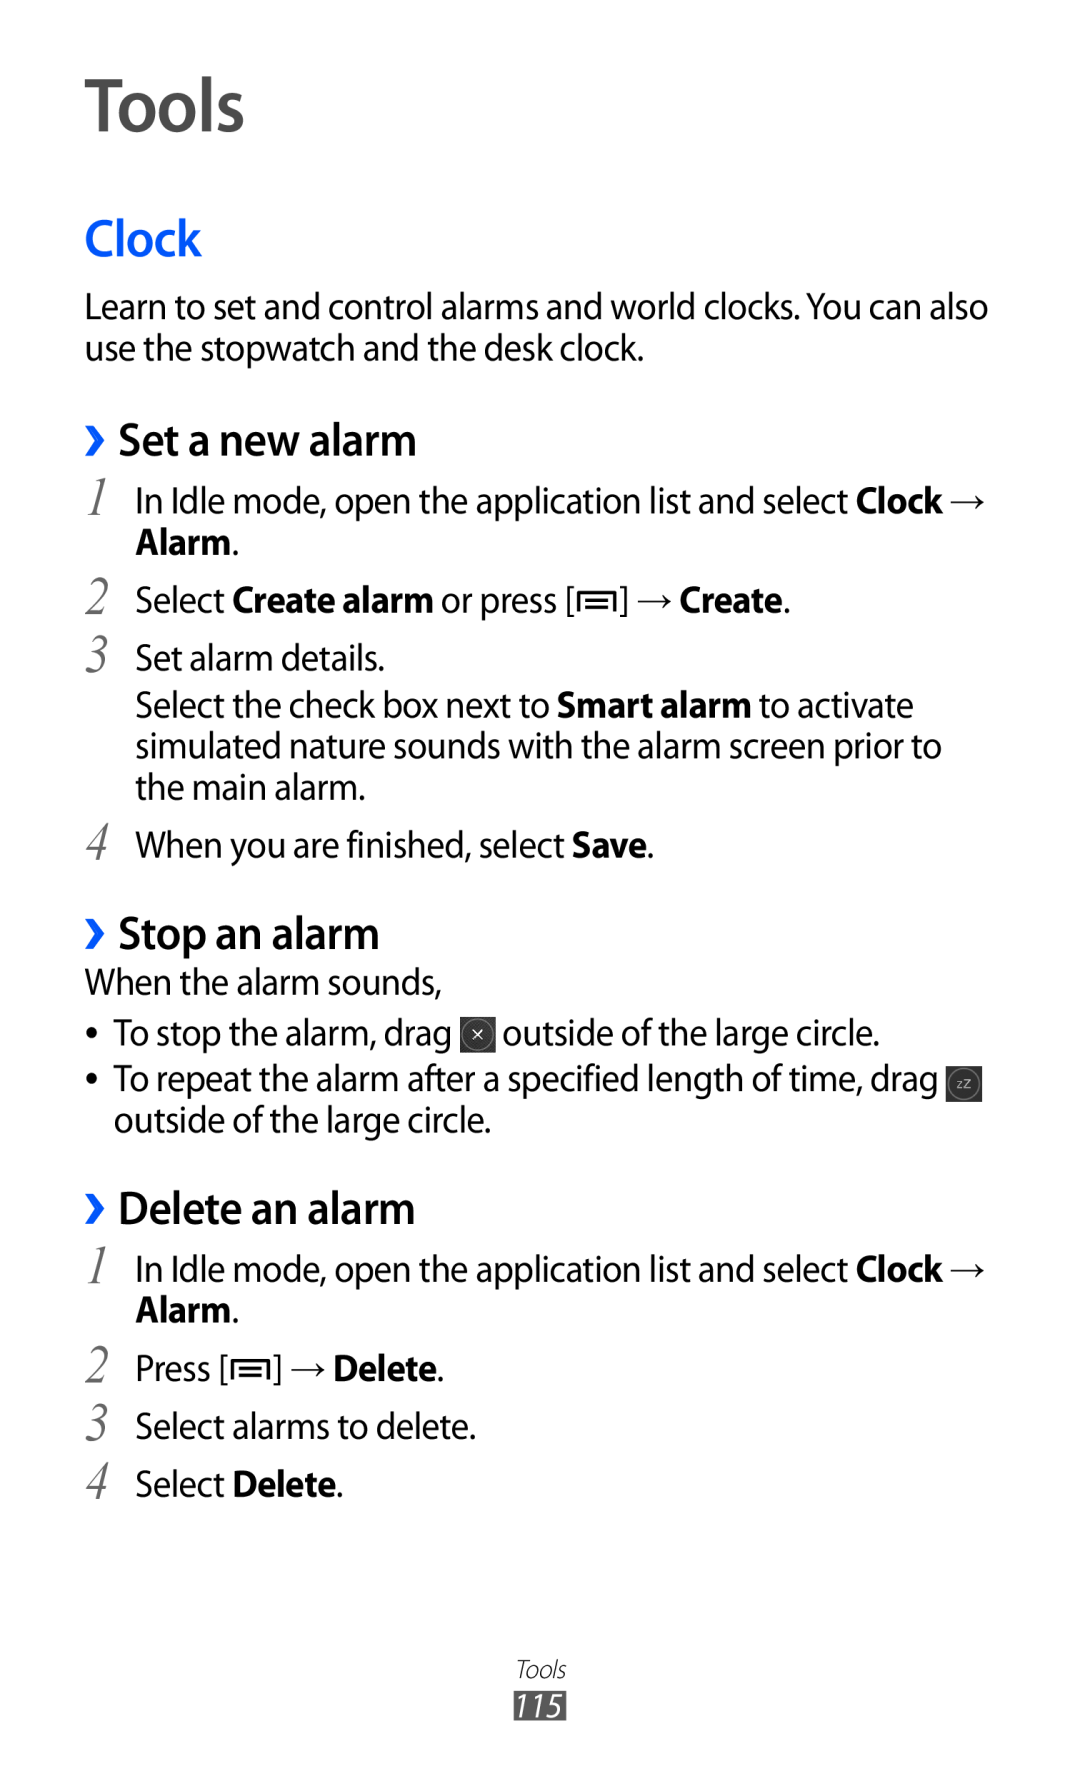 Samsung GT-I9070 user manual Tools, Clock, ››Set a new alarm, ››Stop an alarm, ››Delete an alarm, Alarm 